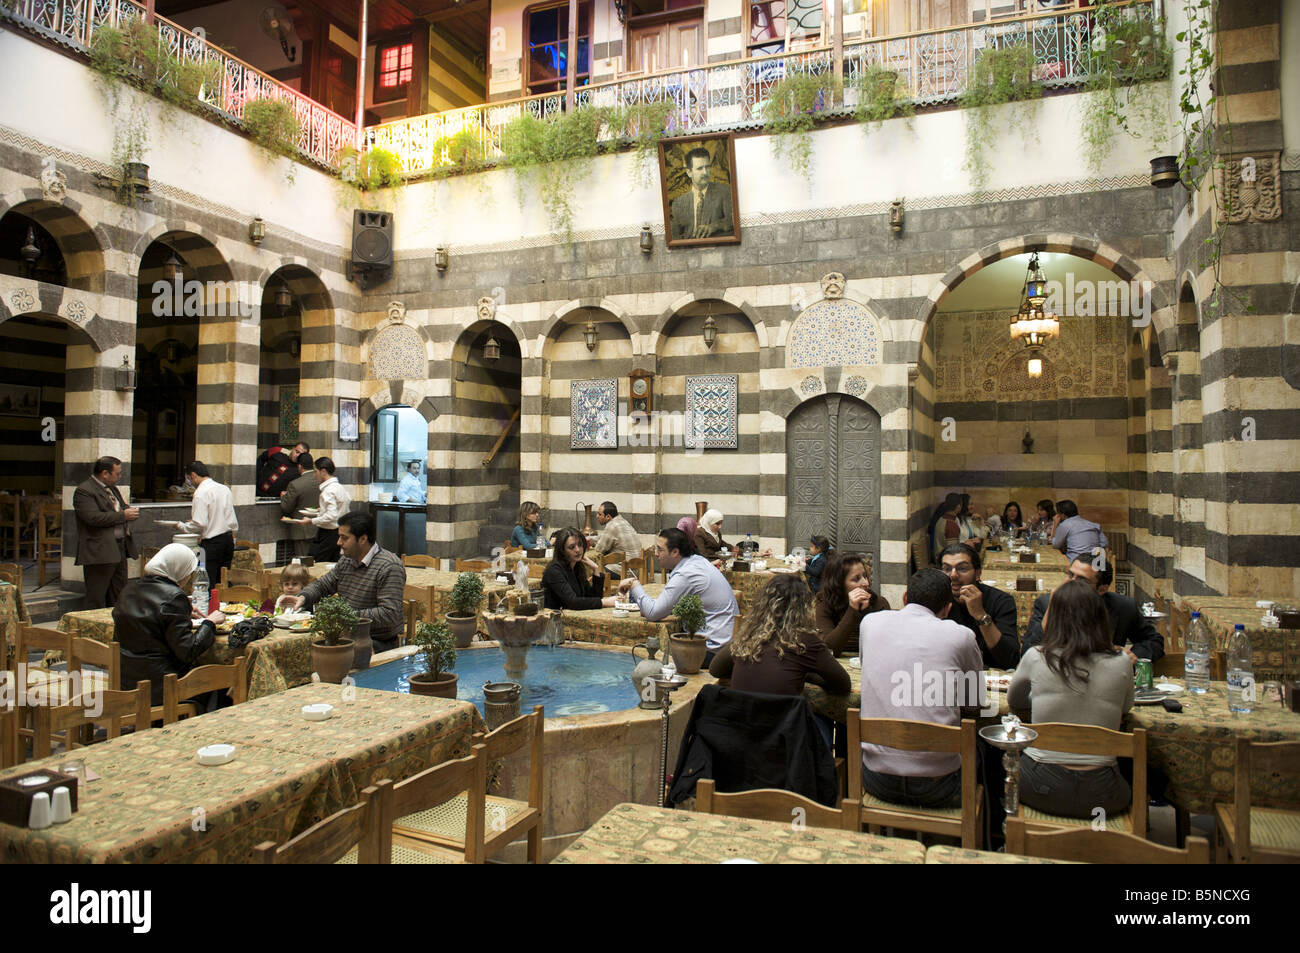 Narcissus palace Restaurant cafe, Damascus Syria Stock Photo